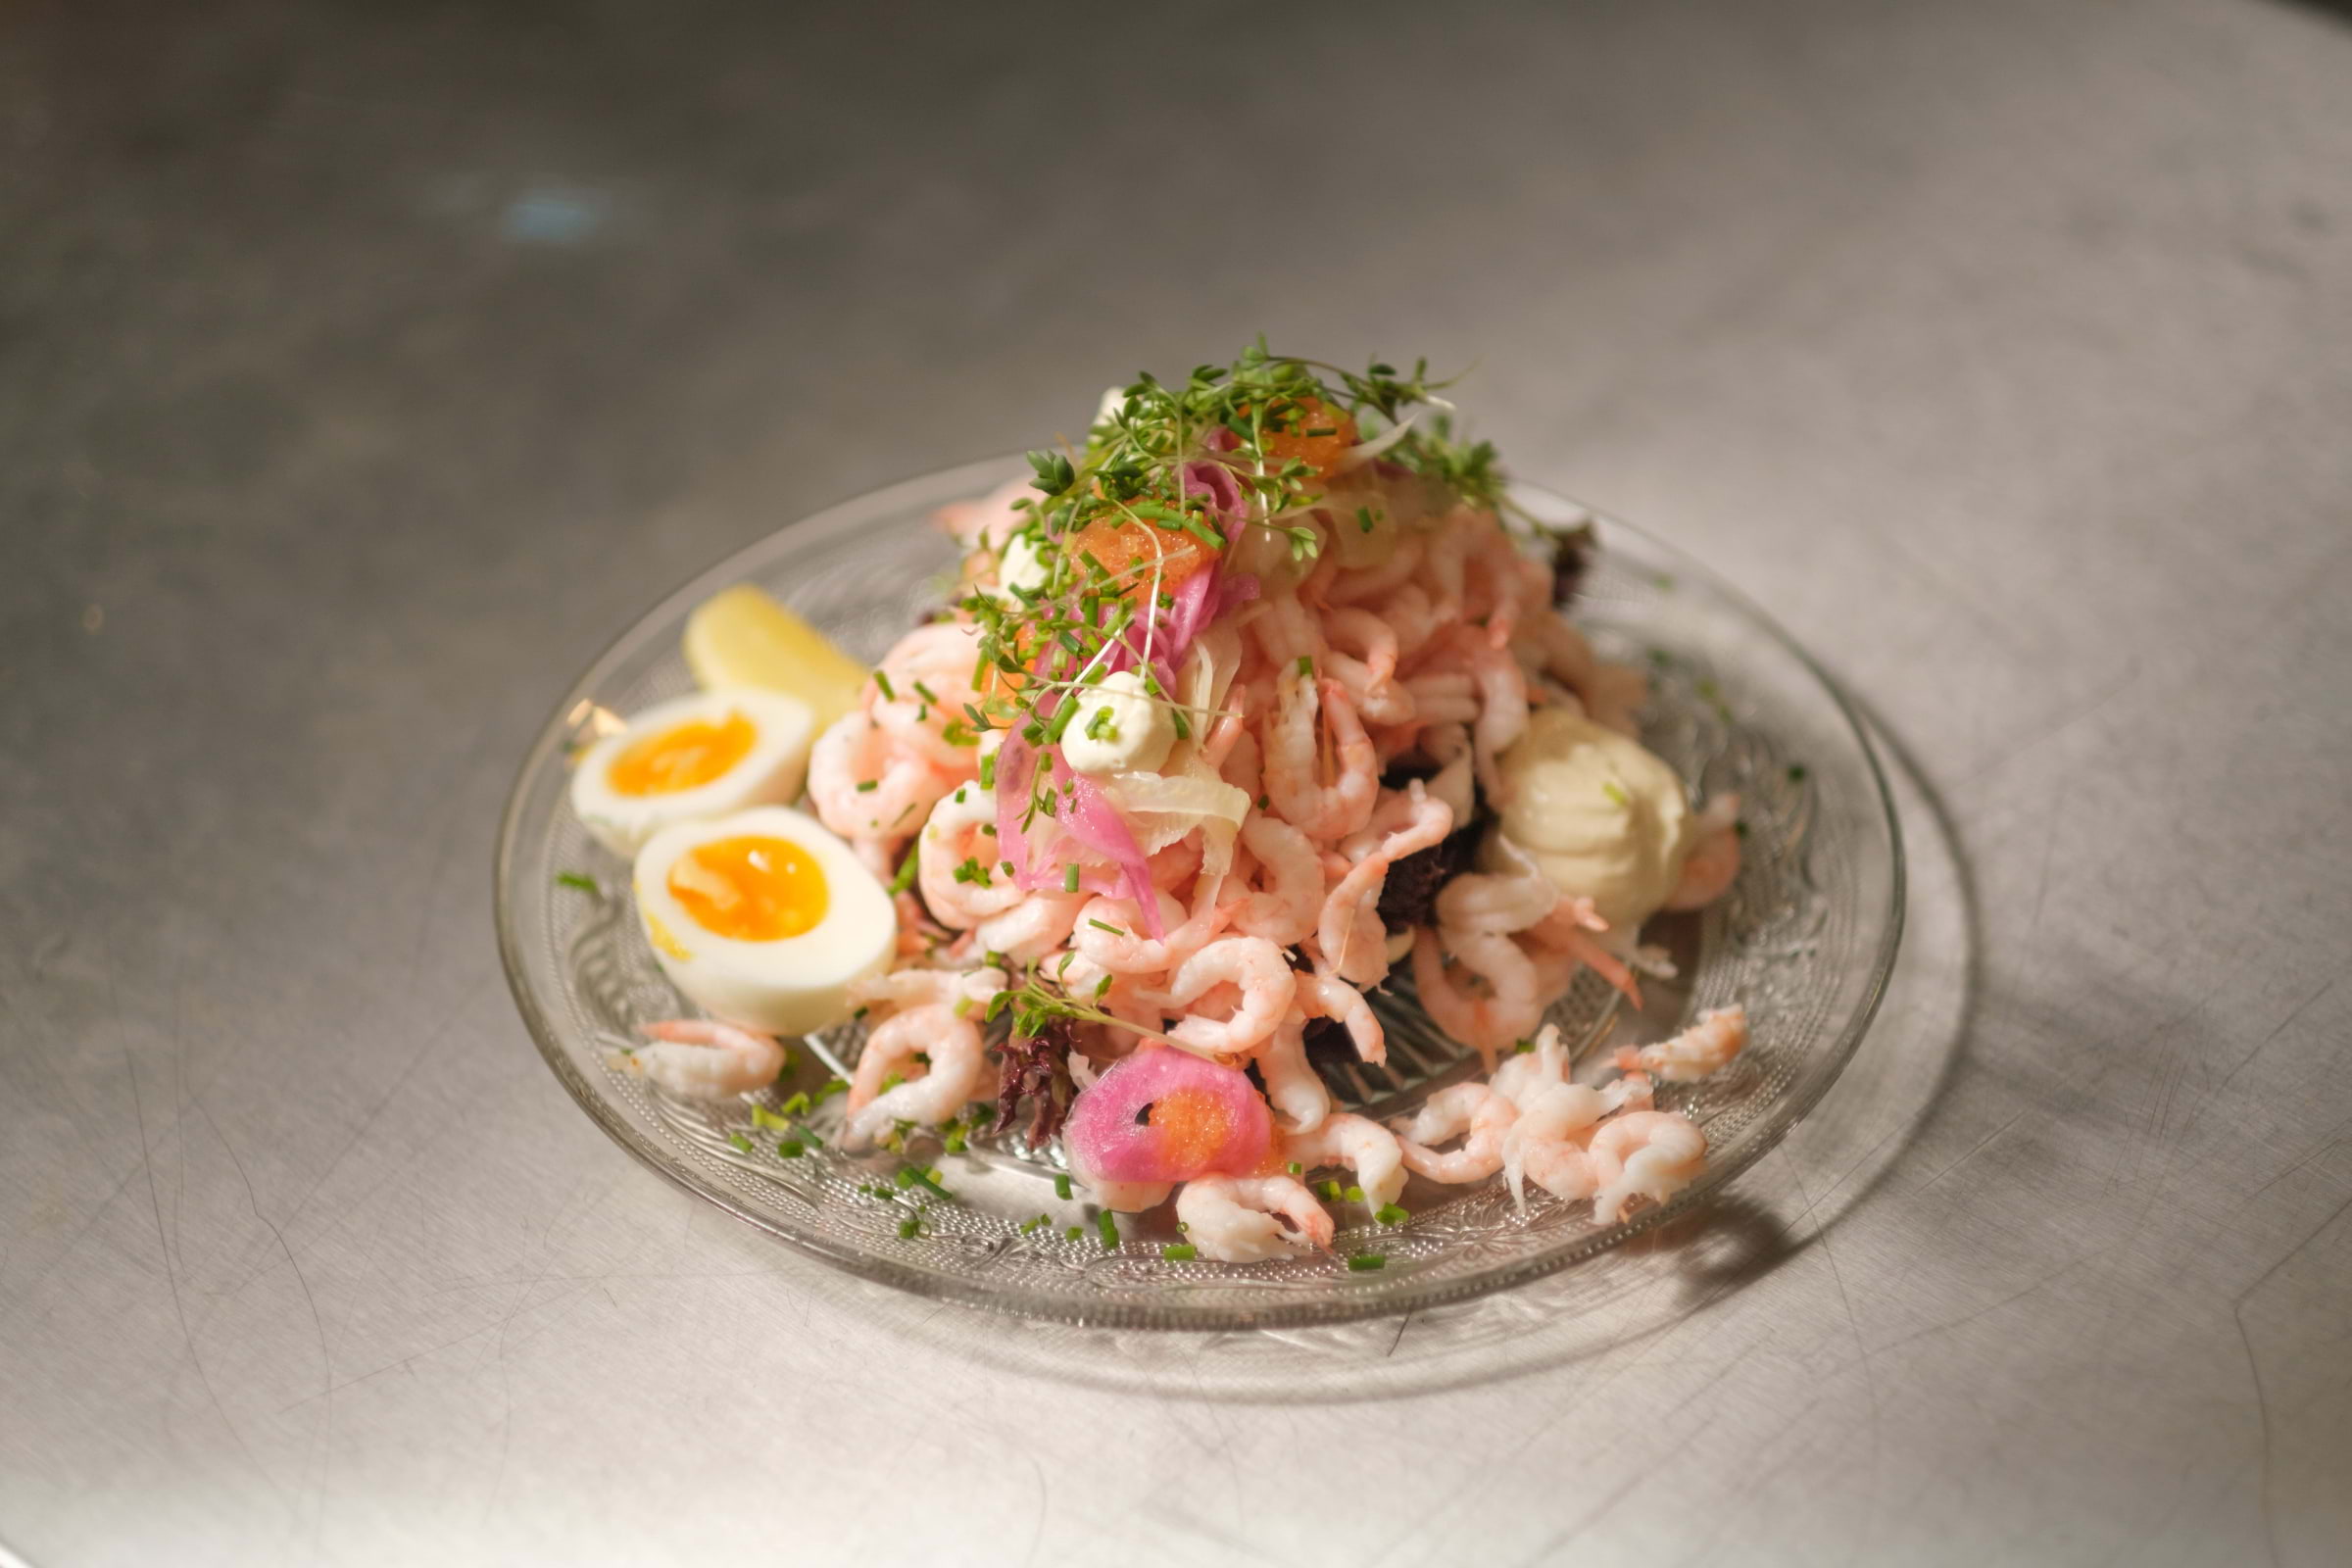 Where to find Gothenburg&#039;s best prawn sandwich